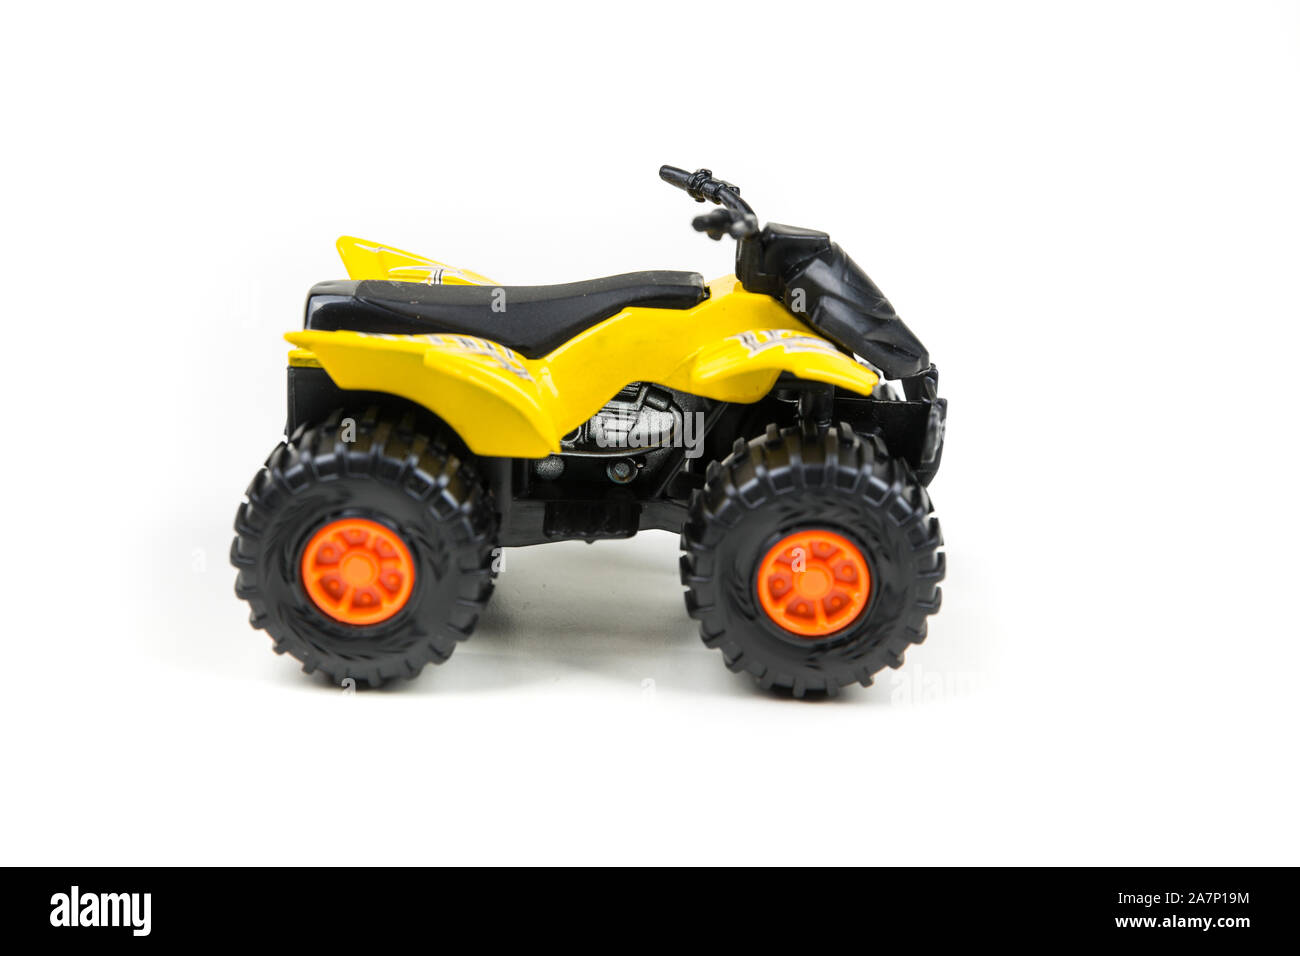 Atv quad jouet en matière plastique jaune sur fond blanc Photo Stock - Alamy